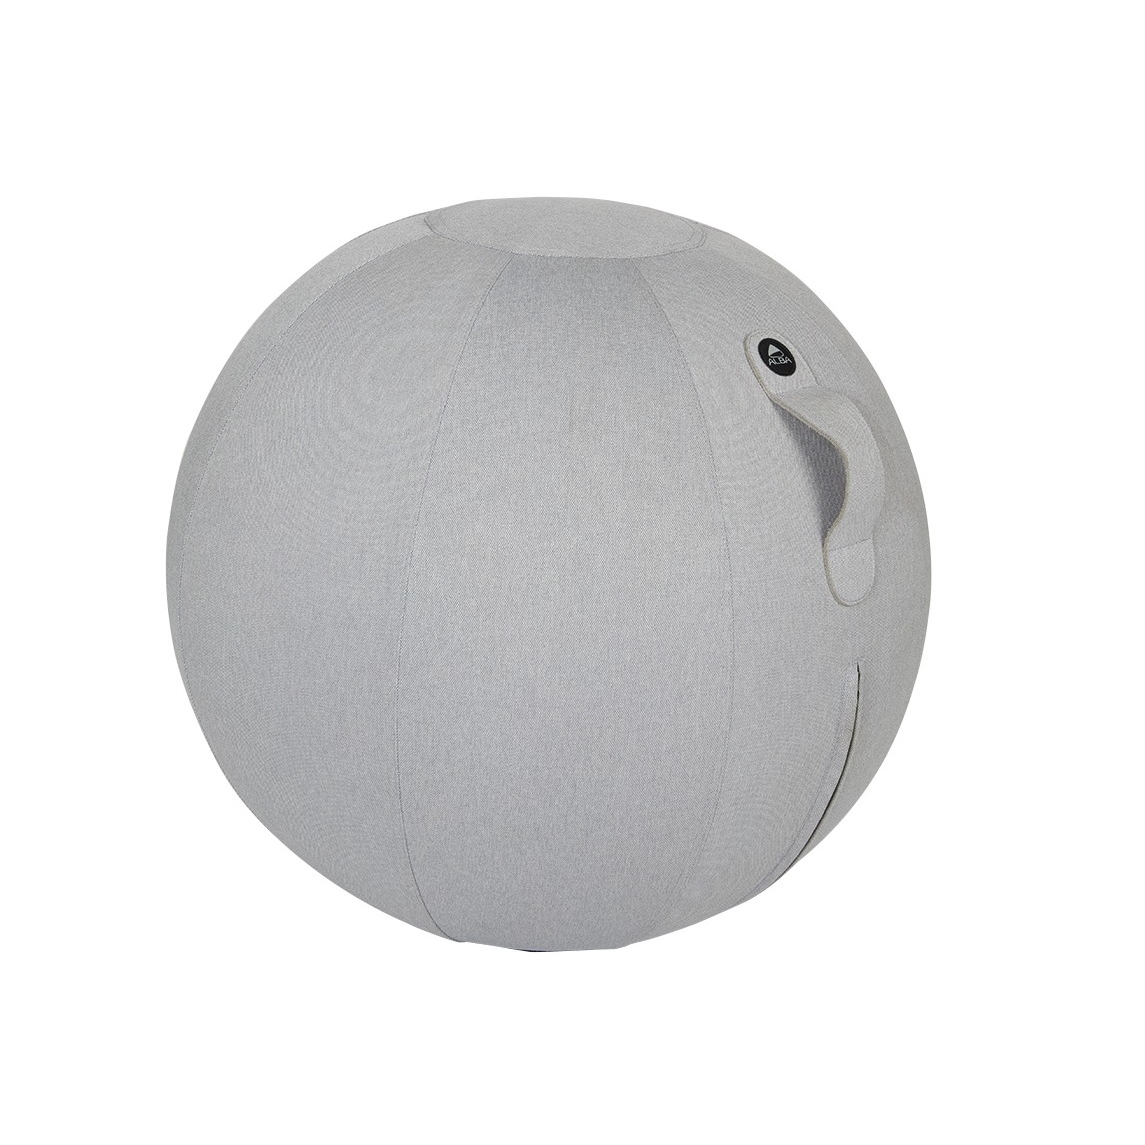 Ergonomický balanční sedací míč Alba, šedý